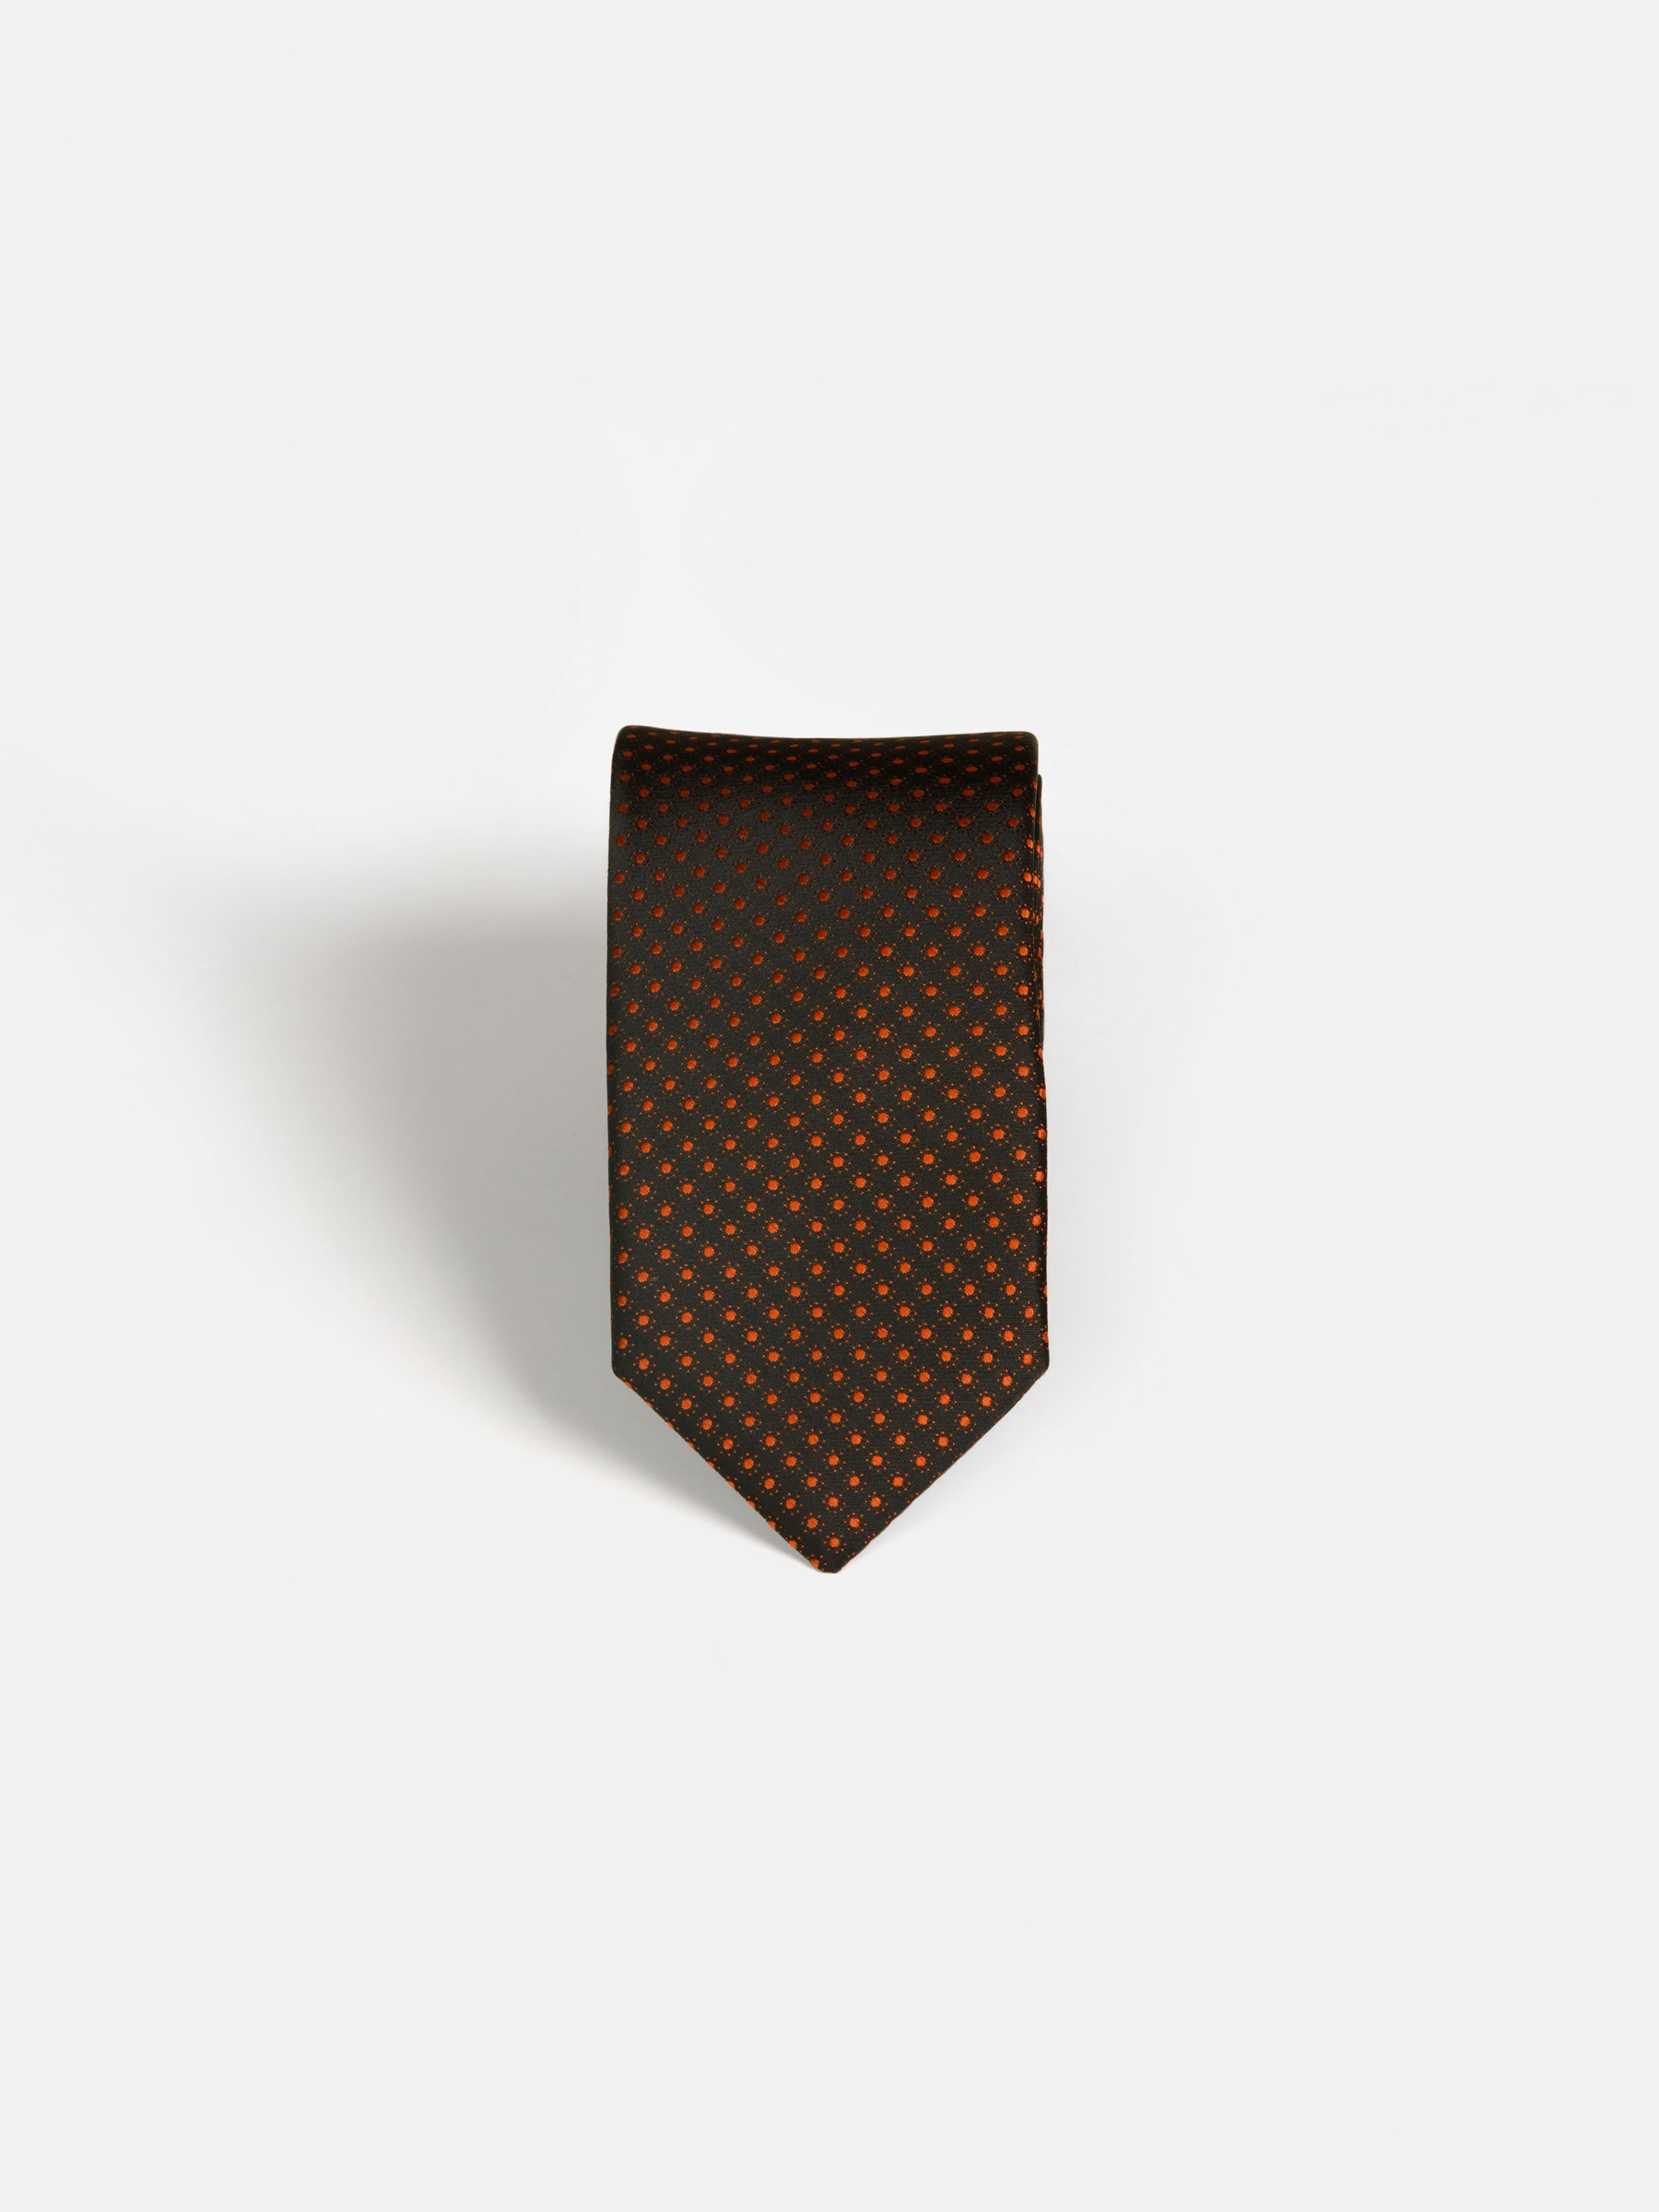 Liam Black Orange Tie